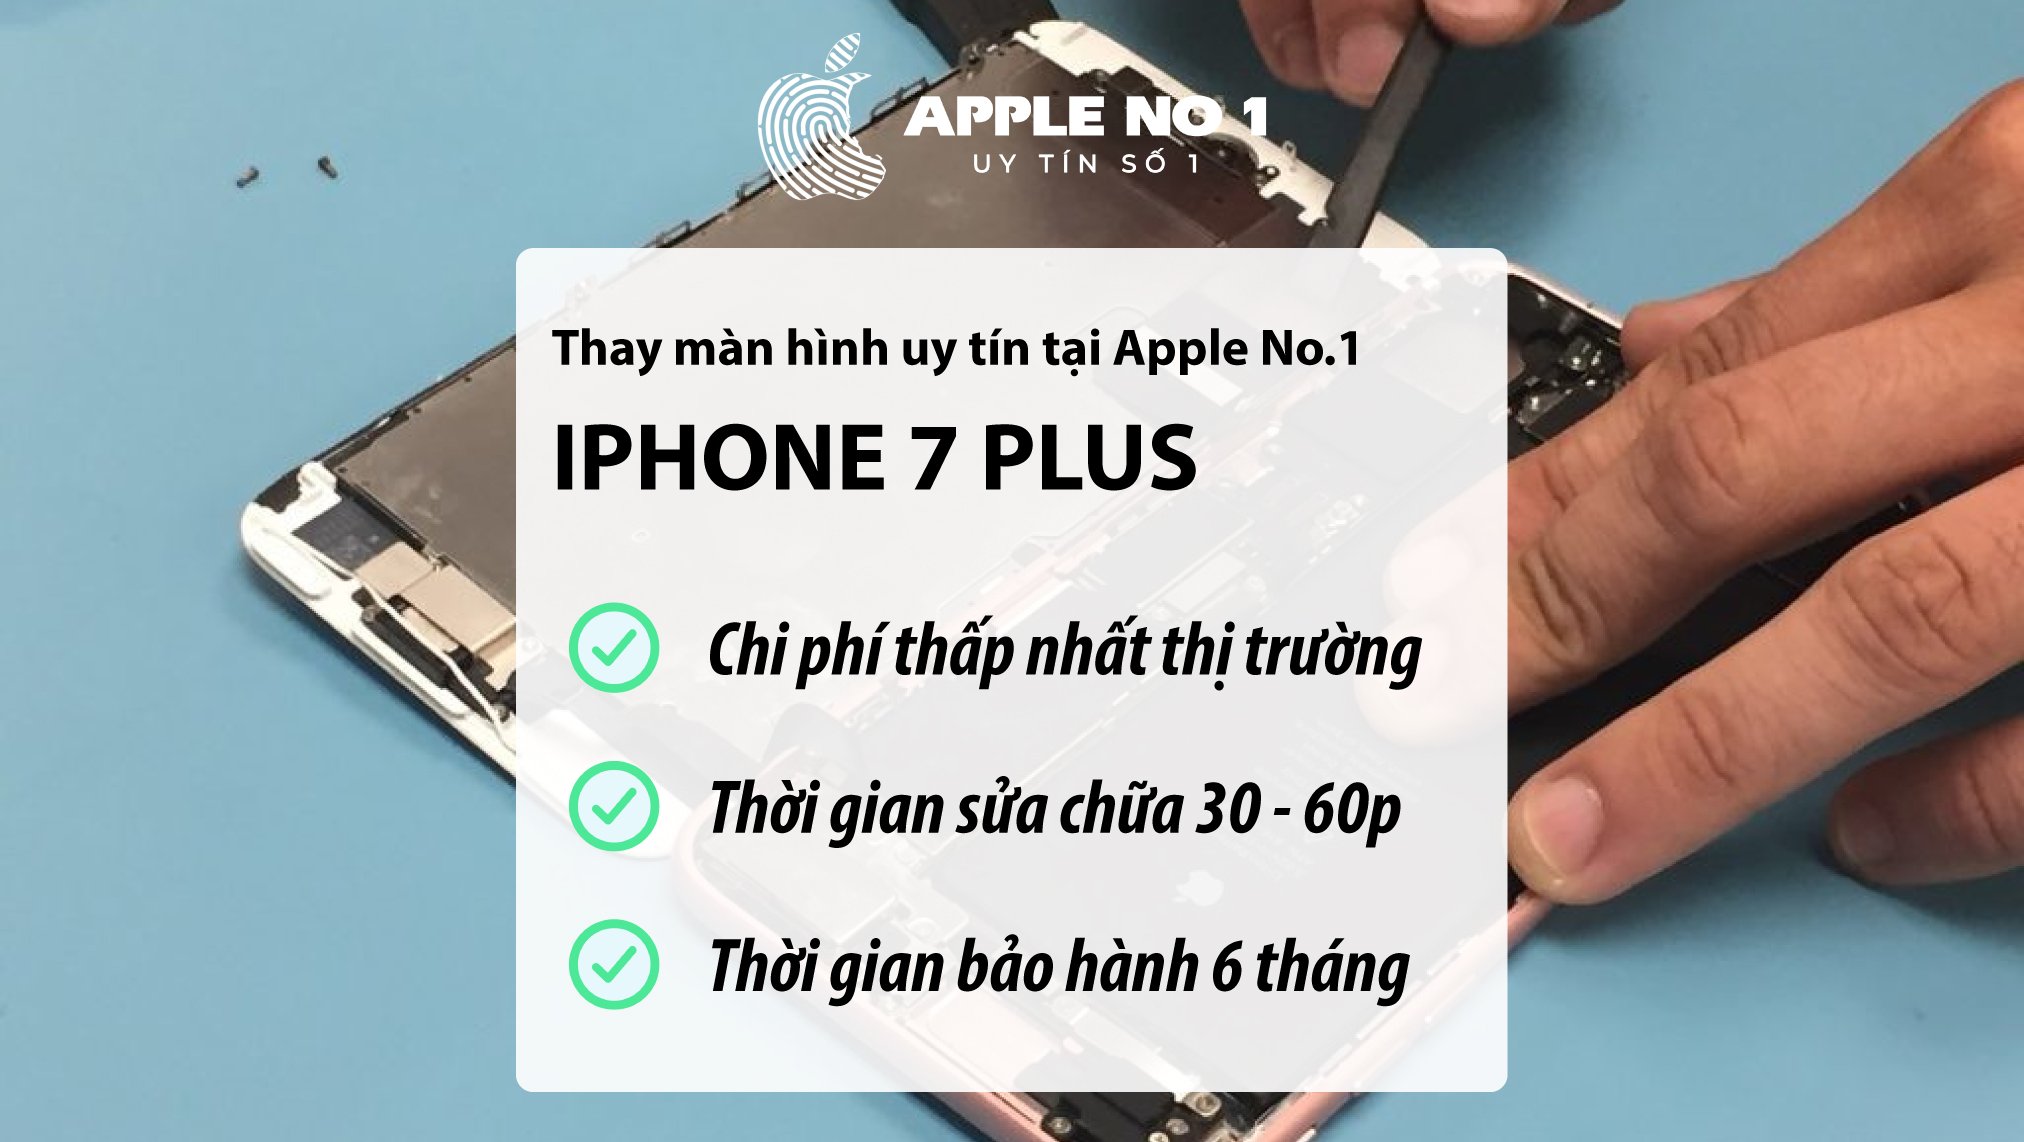 Địa chỉ thay màn hình iPhone 7 uy tín, chuyên nghiệp tại Hà Nội